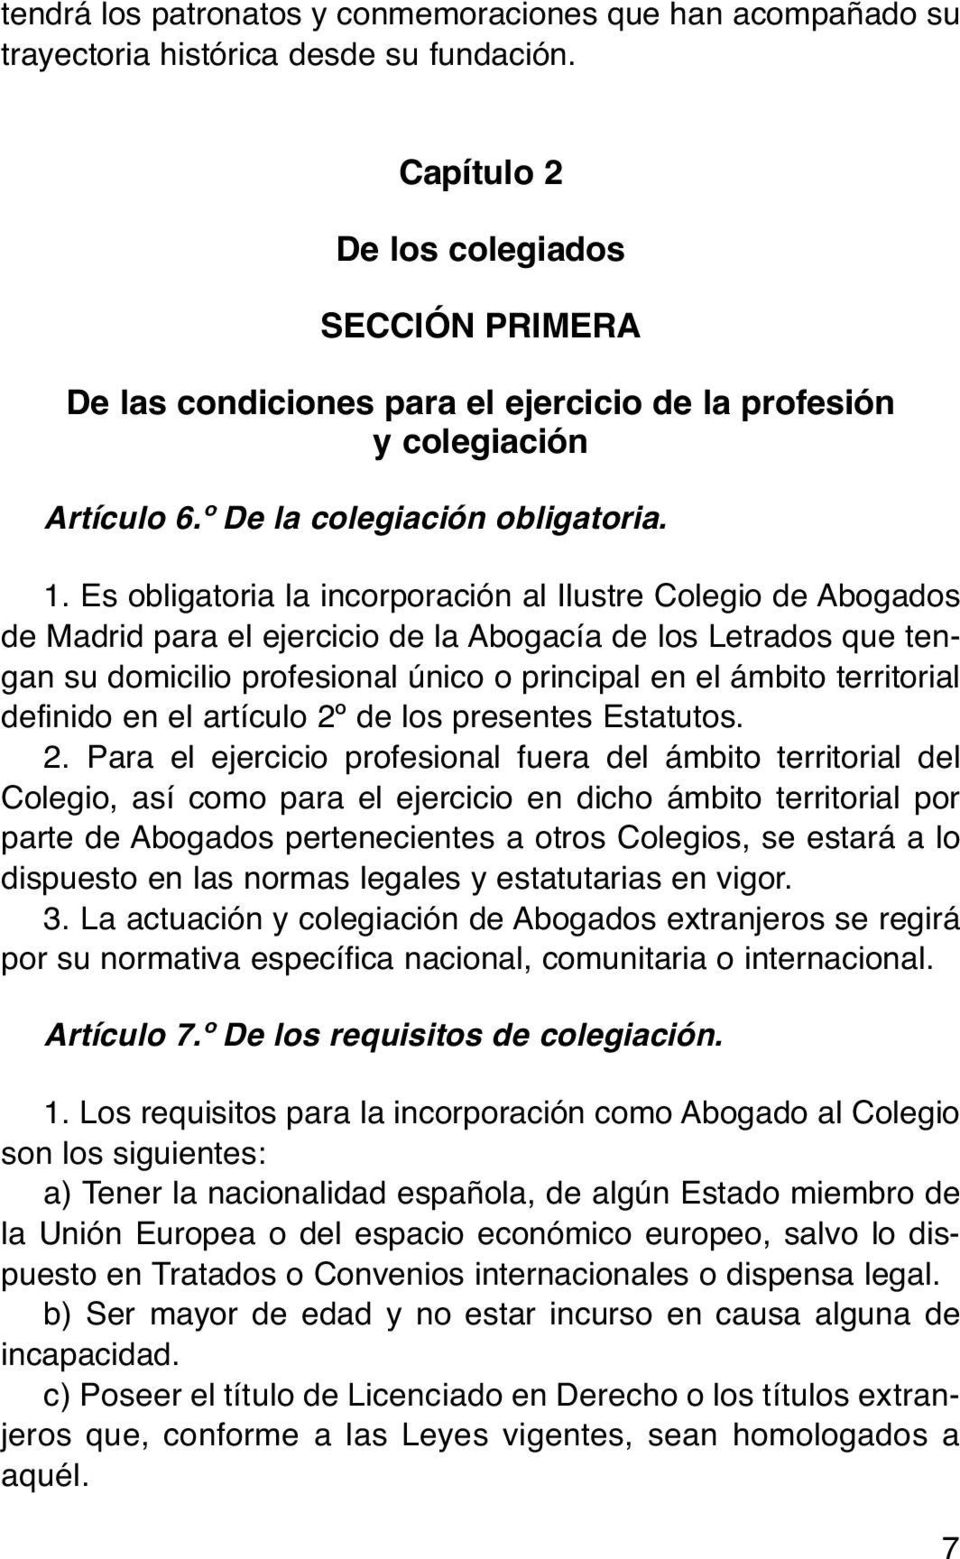 Es obligatoria la incorporación al Ilustre Colegio de Abogados de Madrid para el ejercicio de la Abogacía de los Letrados que tengan su domicilio profesional único o principal en el ámbito